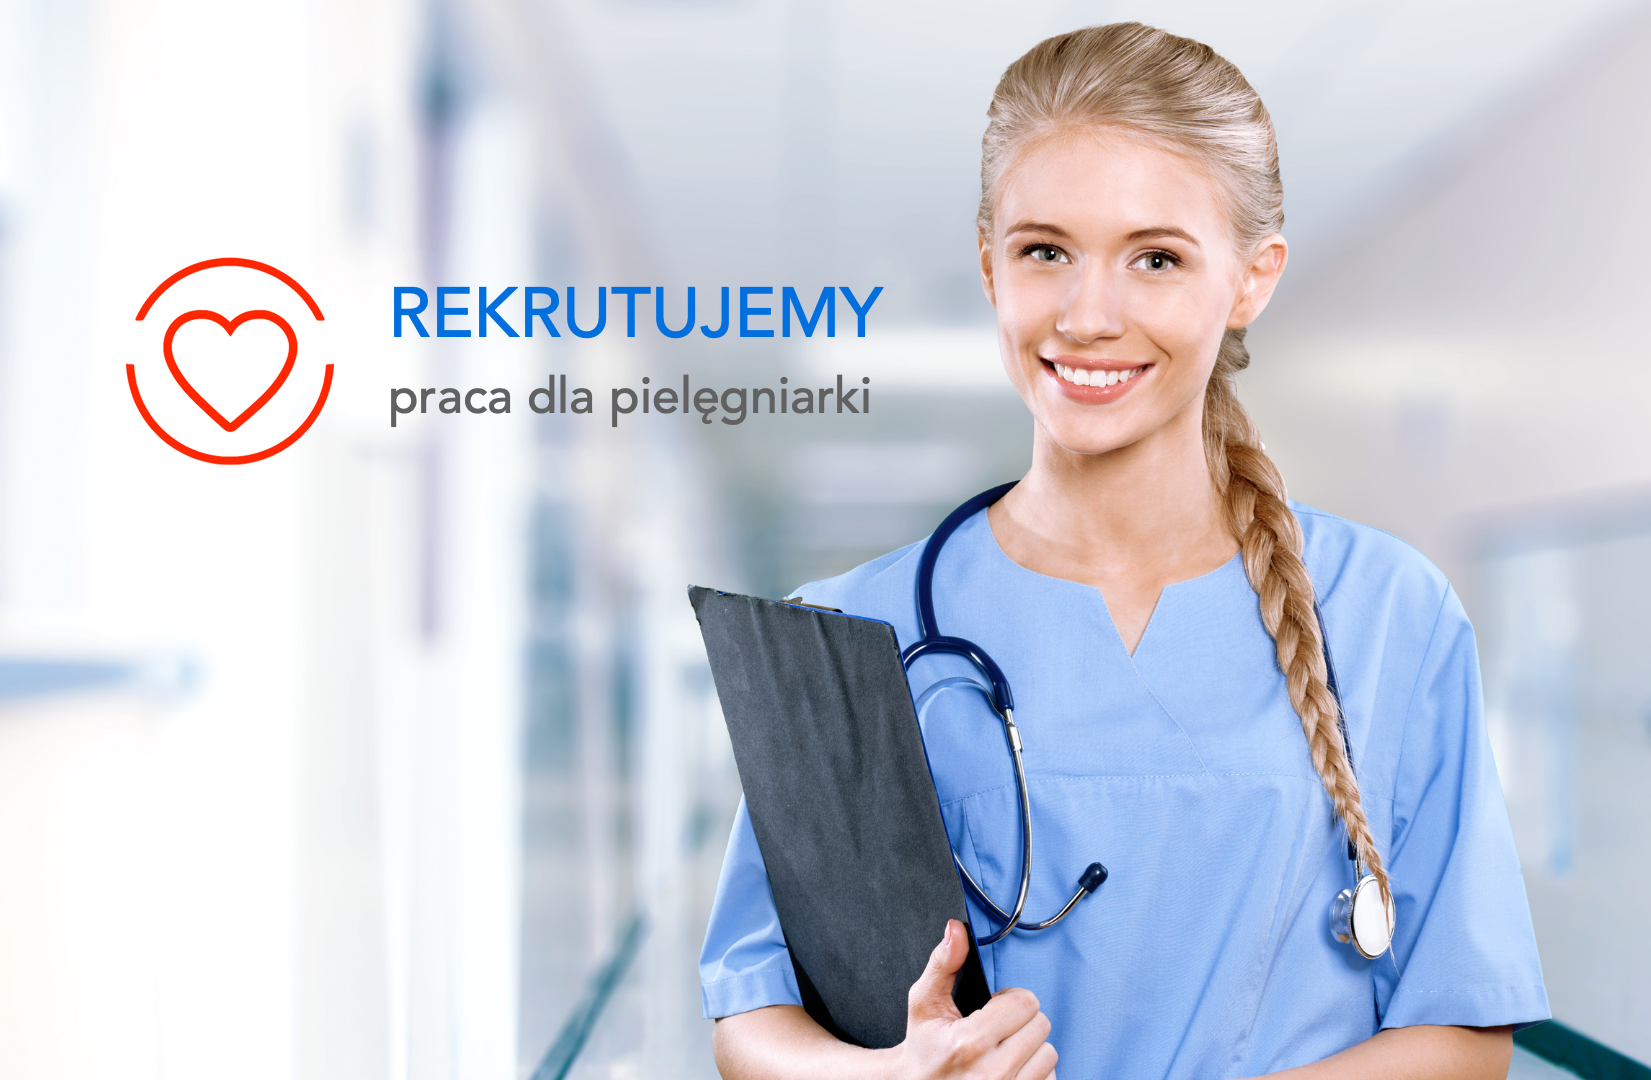 Rekrutujemy – praca dla pielęgniarki Lublin – Lubelskie Centrum Kardiologii